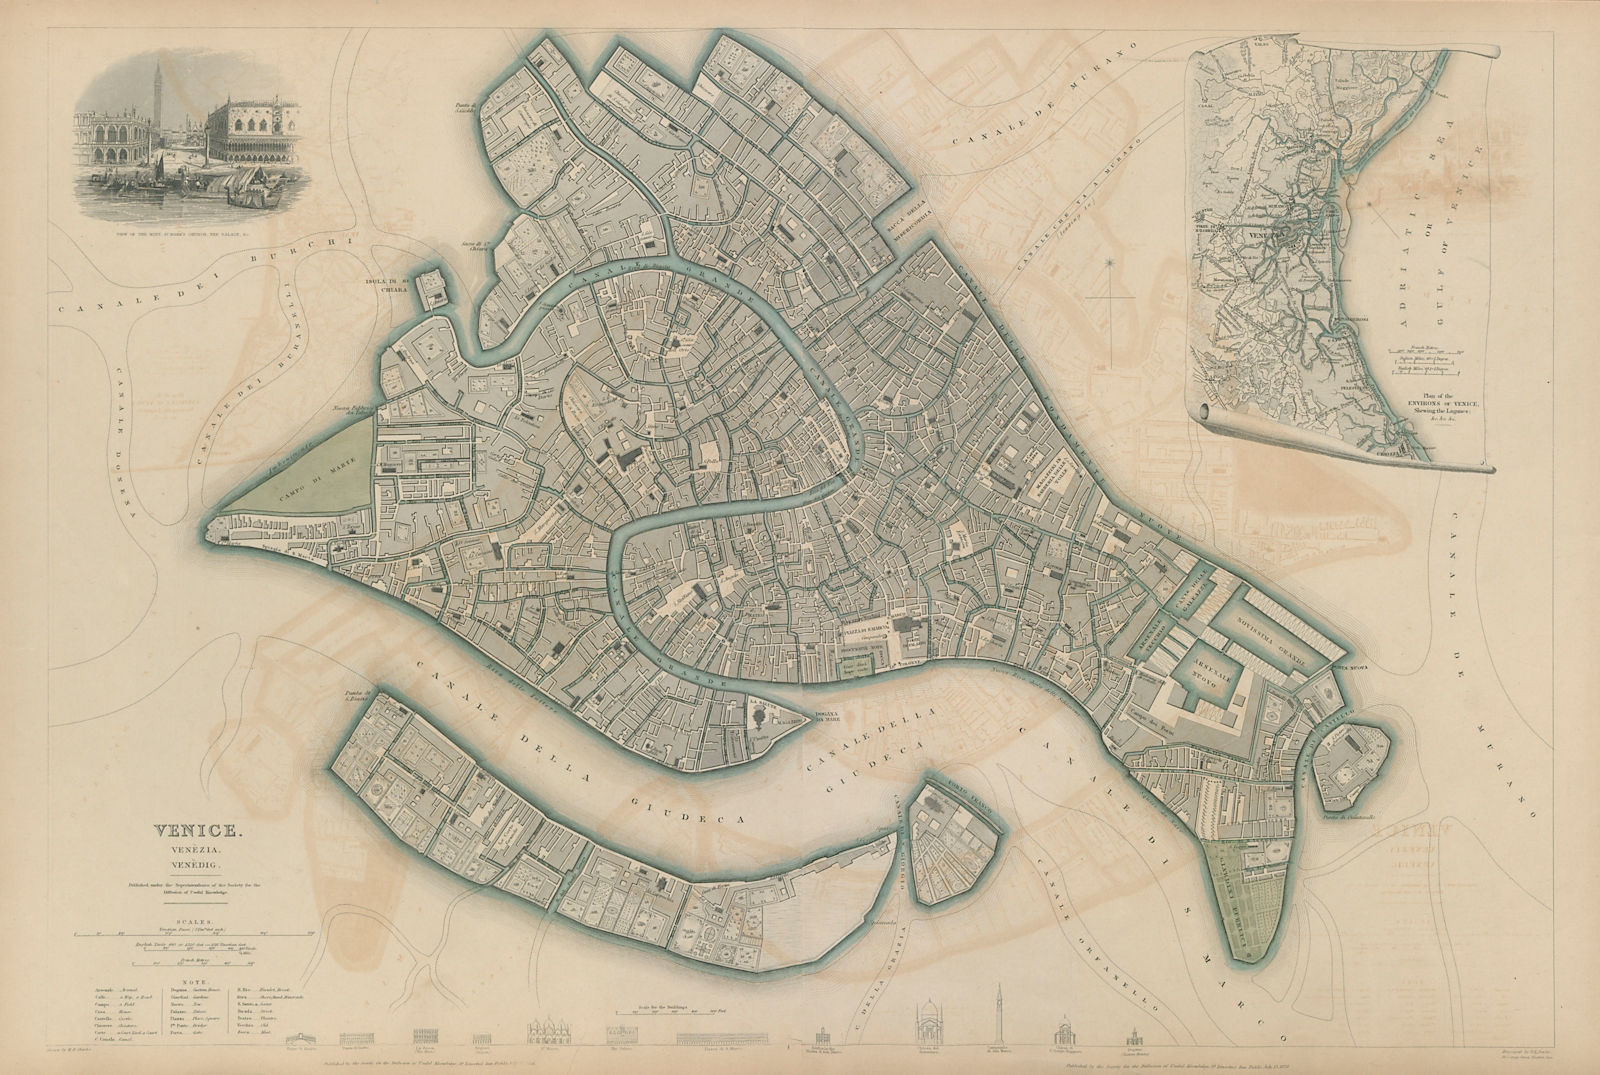 VENICE VENEZIA VENEDIG. Antique town city map plan. Environs. LARGE. SDUK 1844